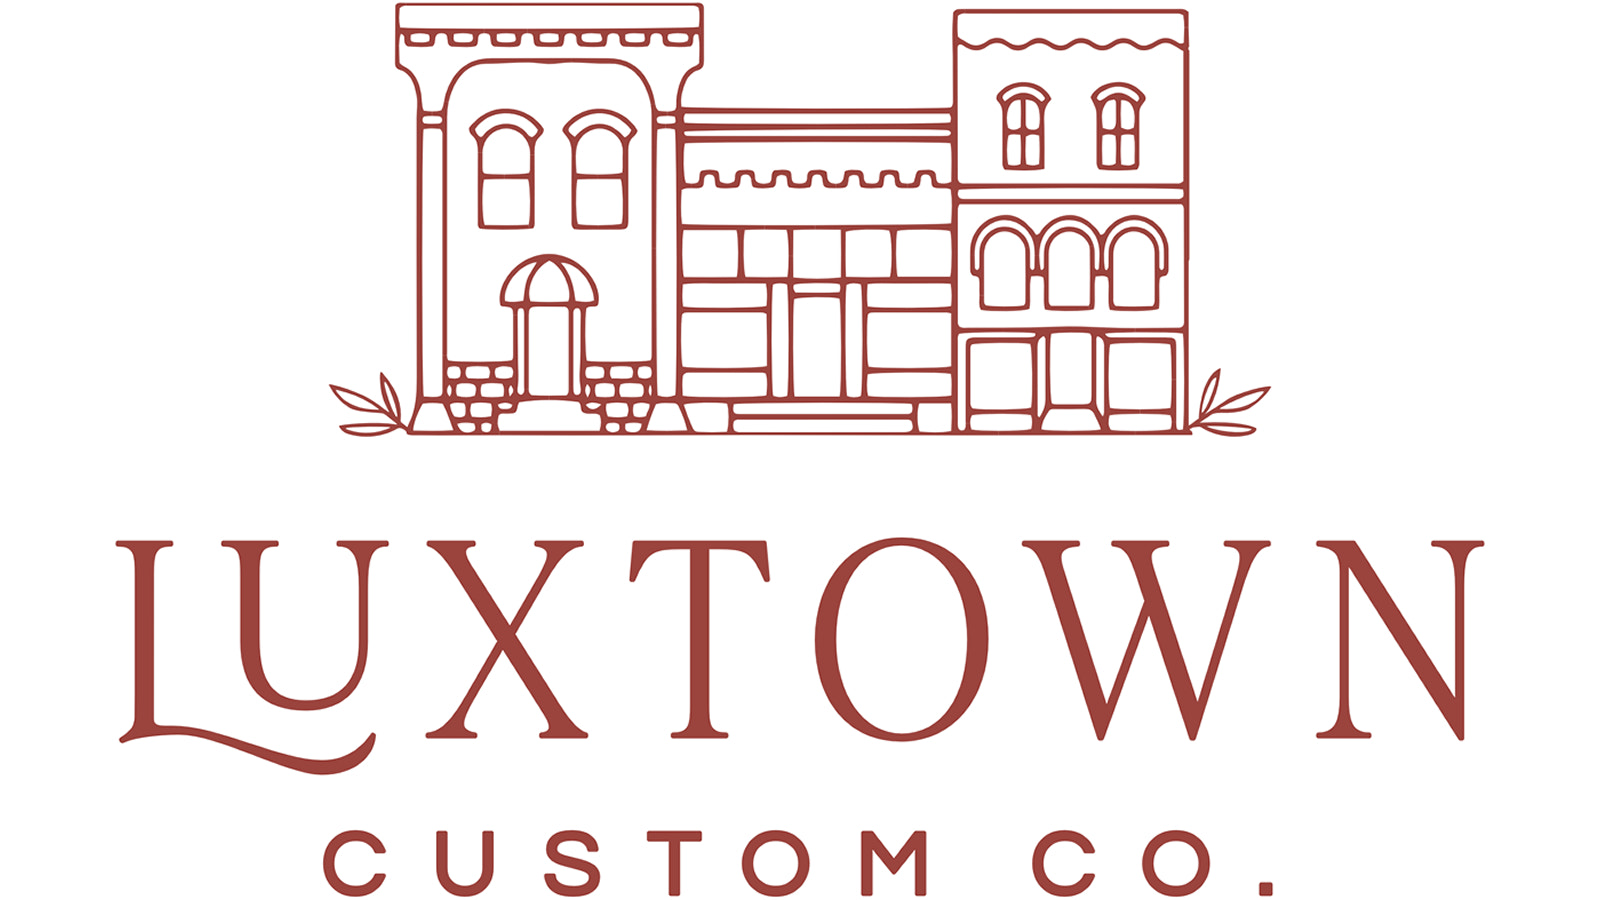 Productos personalizados de Luxtown: pequeños lujos a precios prácticos